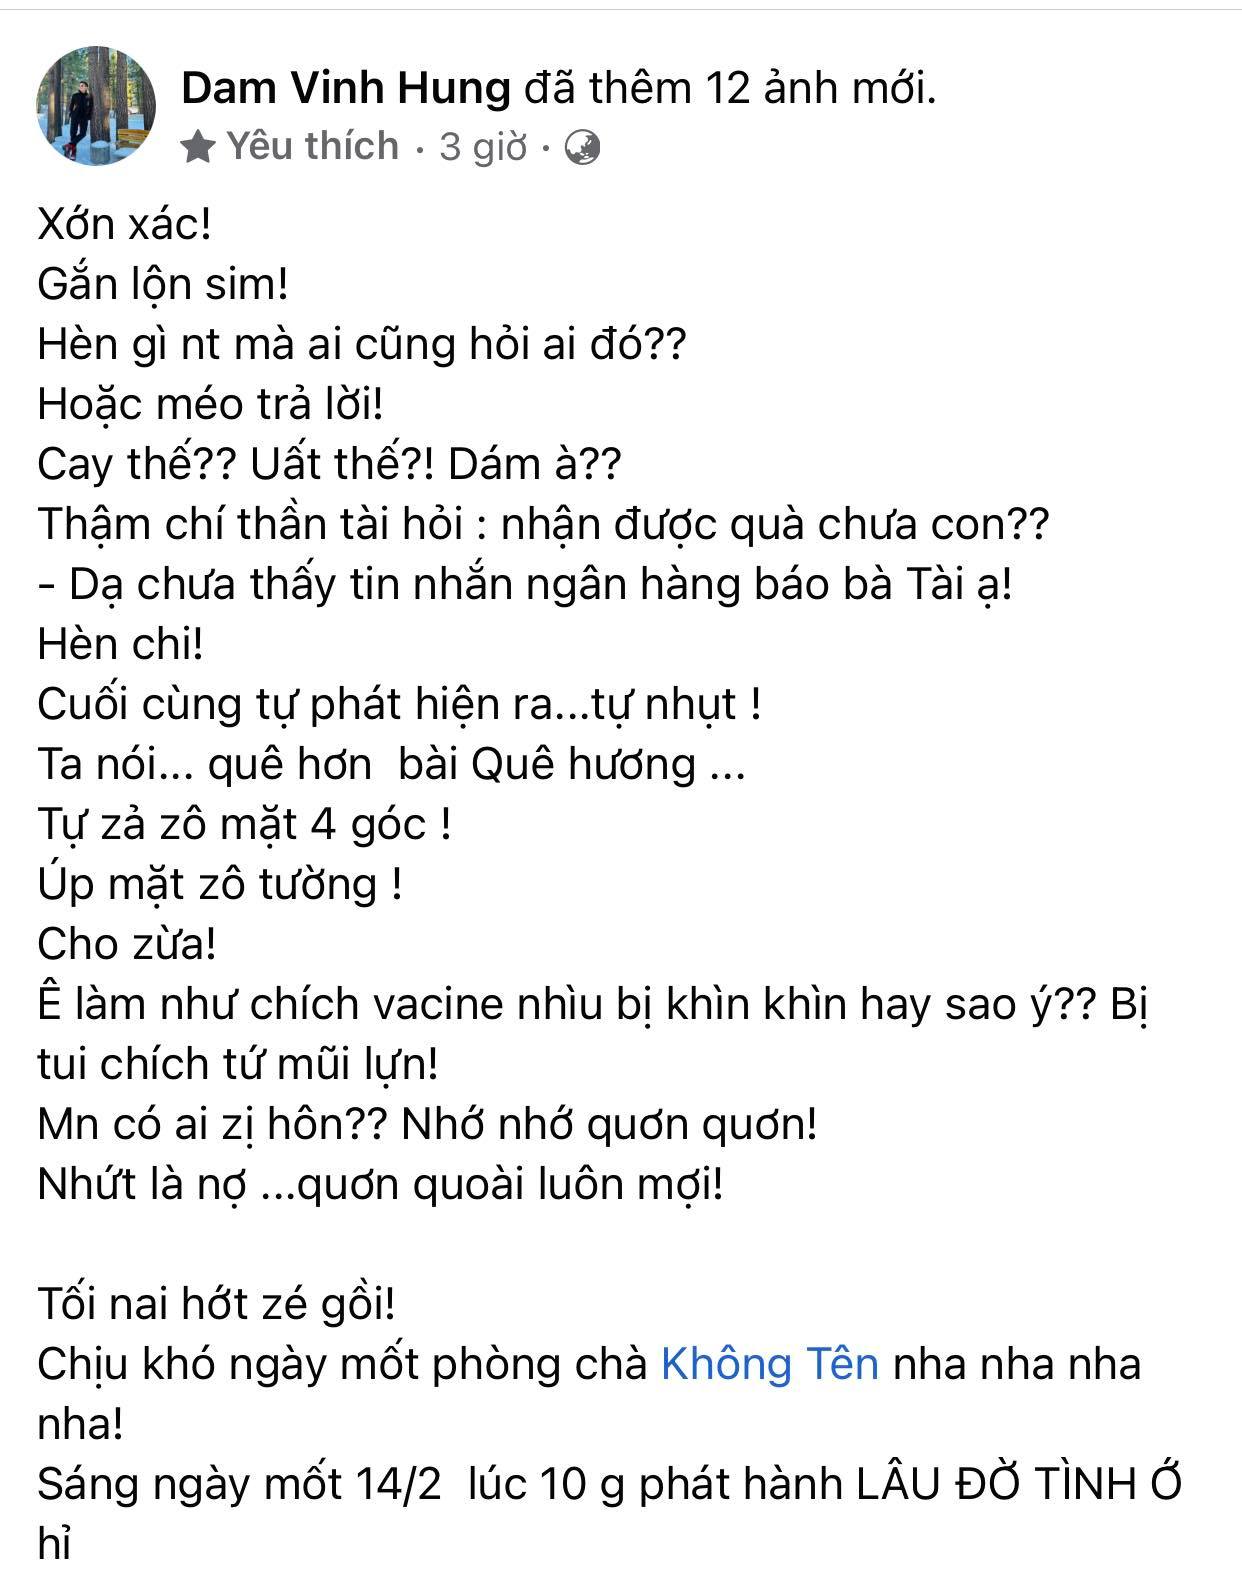 Dam-vinh-hung-chia-se-ve-chuyen-uat-uc-vua-gap-phai-cung-loat-hinh-anh-dinh-kem-gay-xon-xao